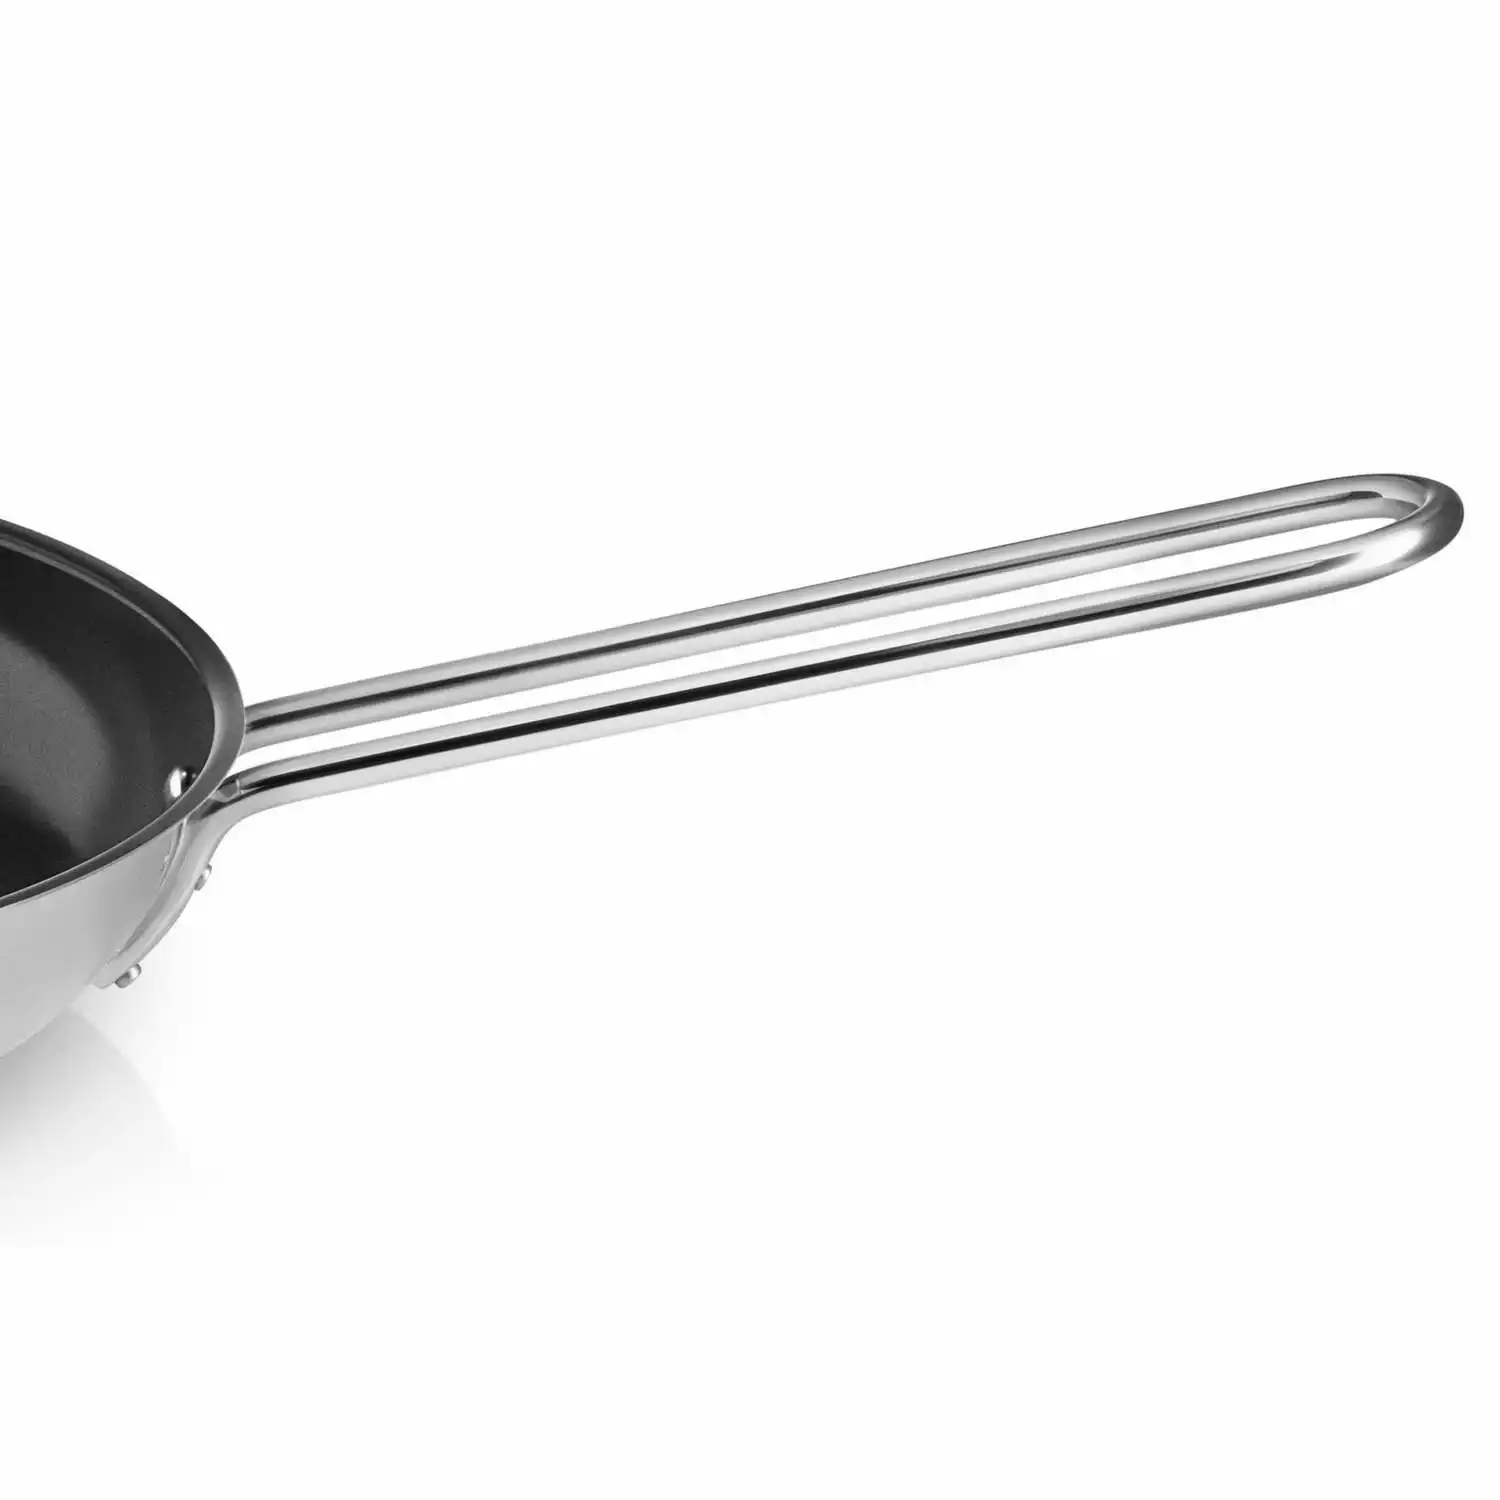 stainless-steel-coating-frying-pan-handle.webp